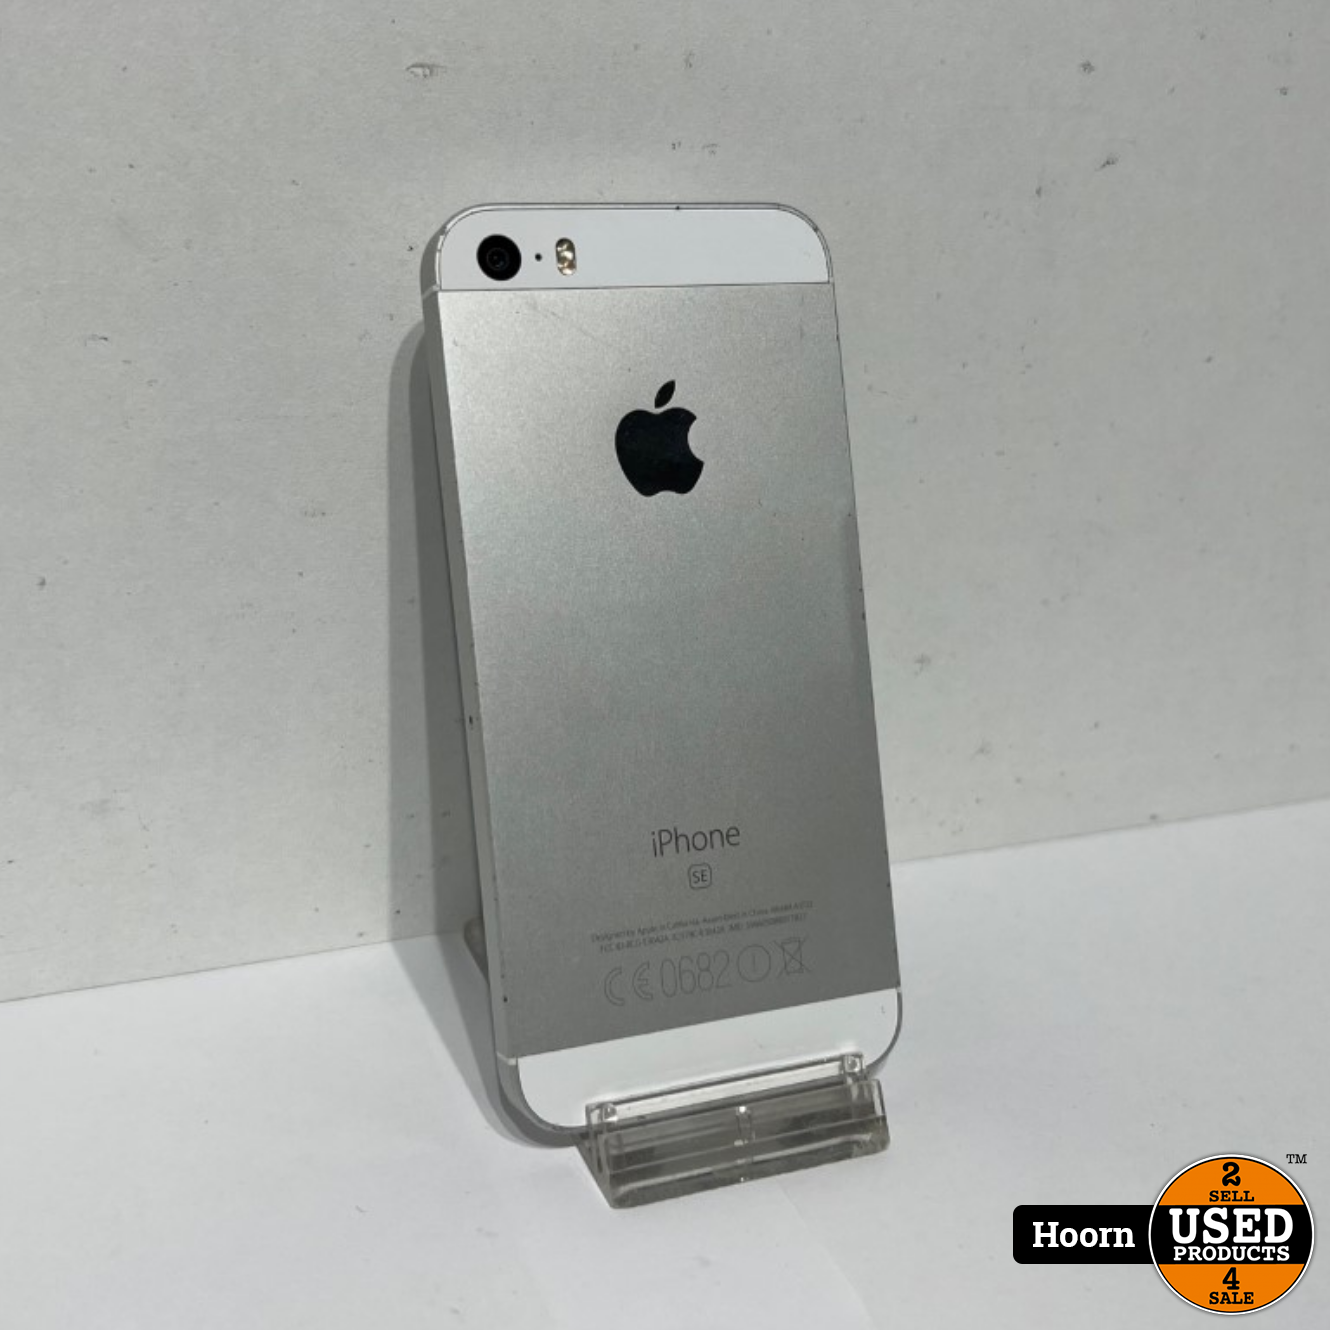 Apple iPhone iPhone SE Silver Los Toestel Accu: 82% - Used Hoorn